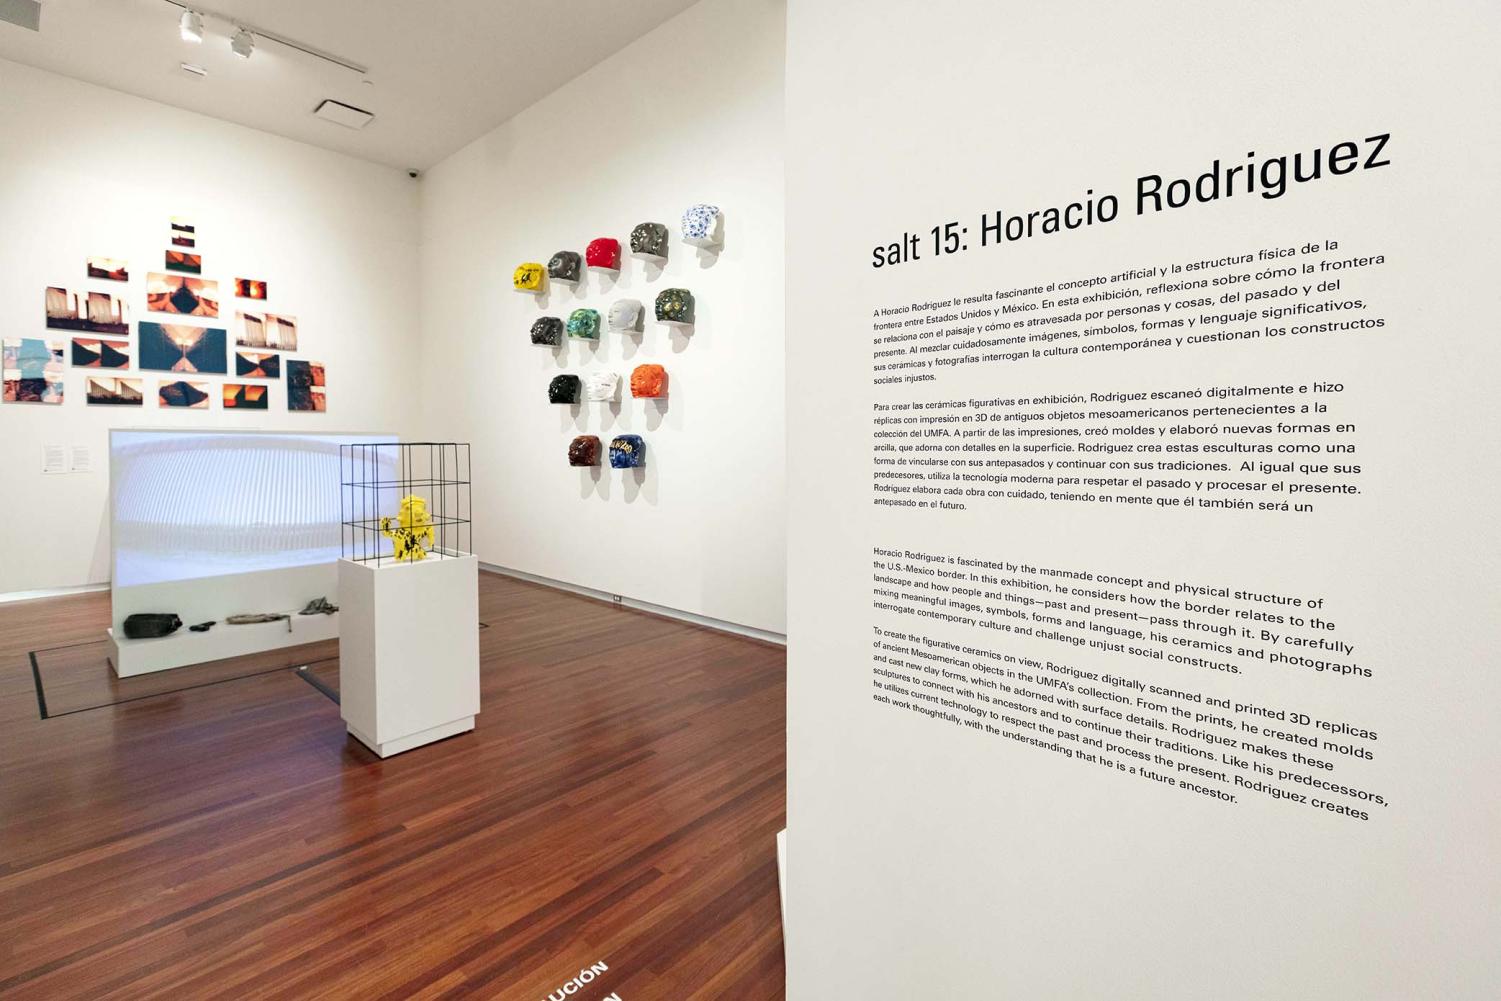 Horacio+Rodriguezs+Ceramic+Pieces+Spotlighted+at+The+Utah+Museum+of+Fine+Arts